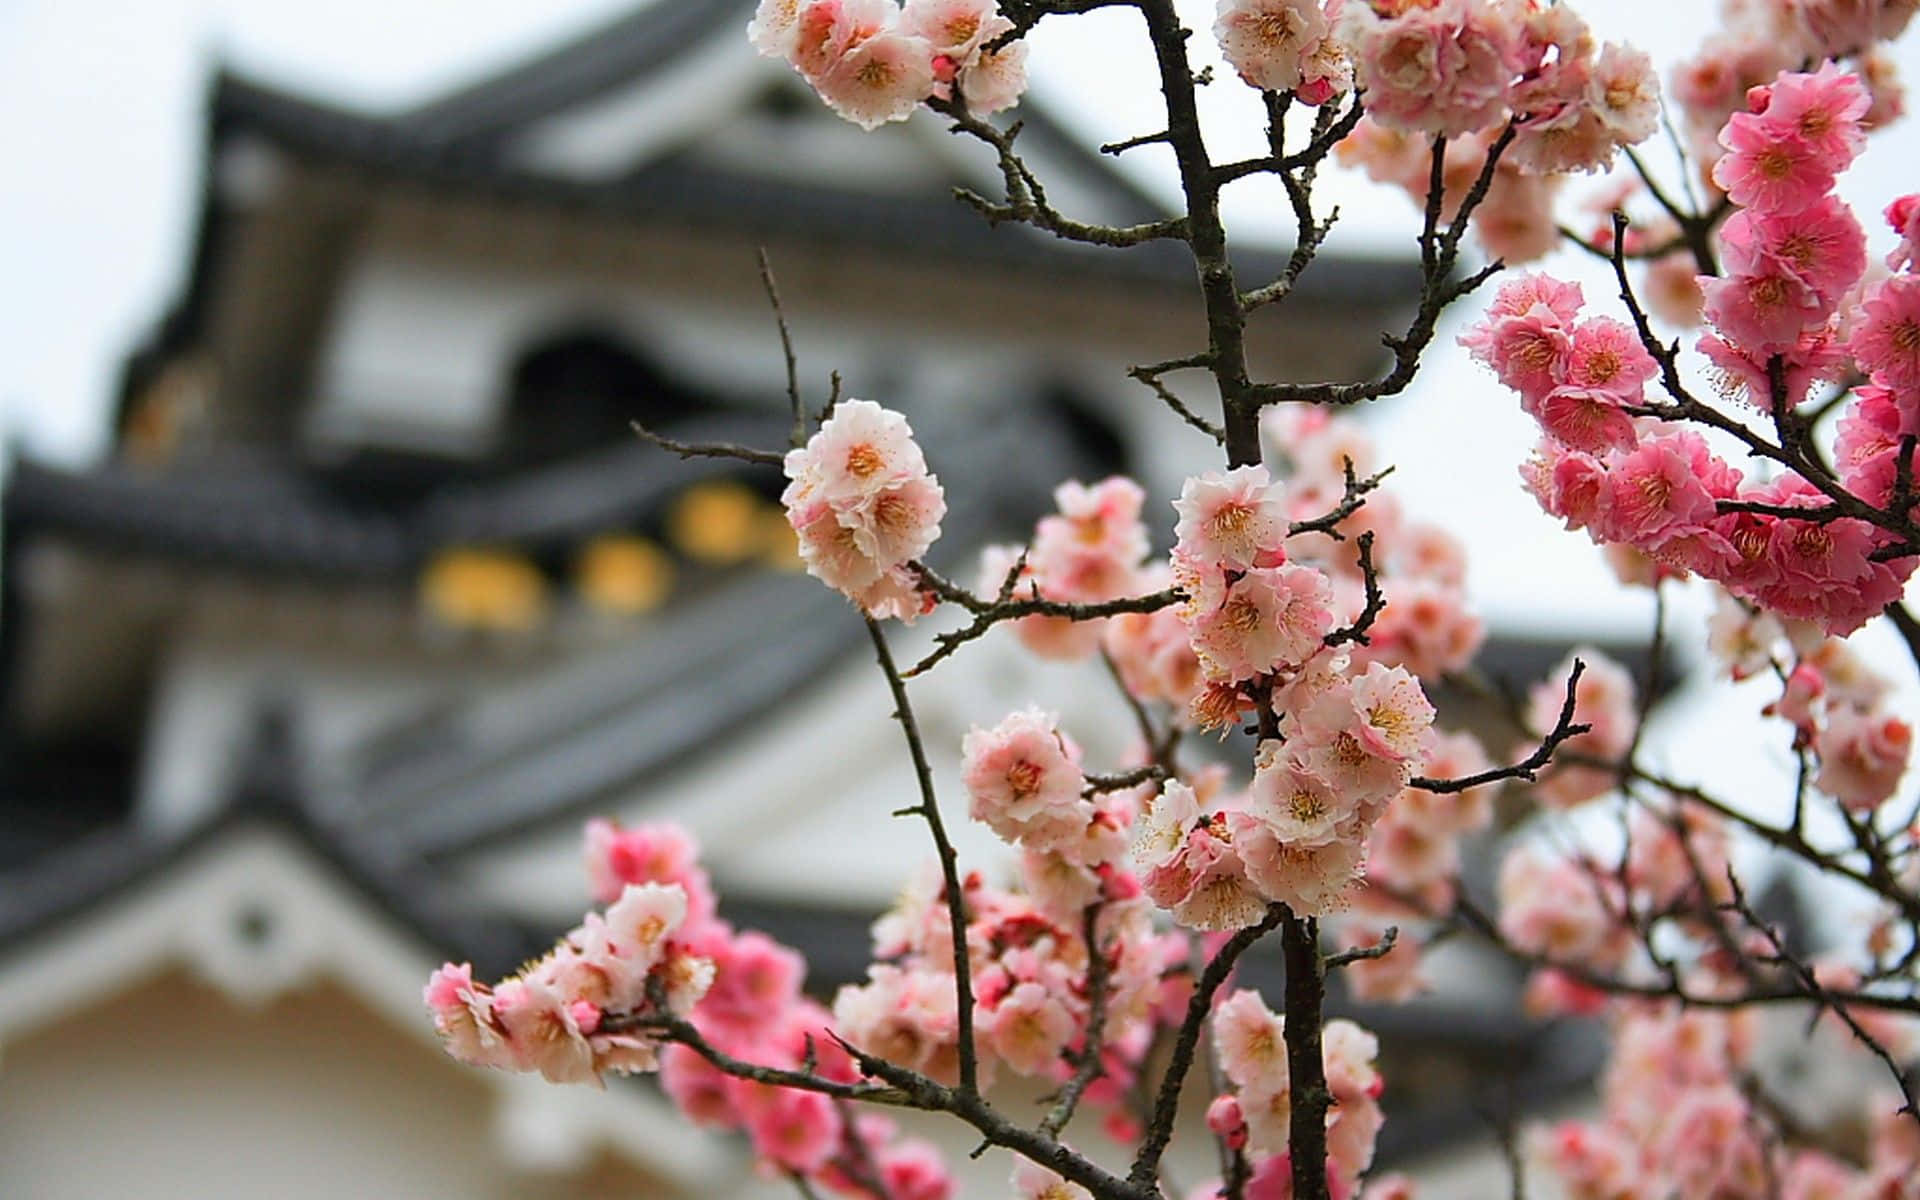 Fondode Pantalla De Cerezo En Flor En El Castillo De Matsumoto En Primavera